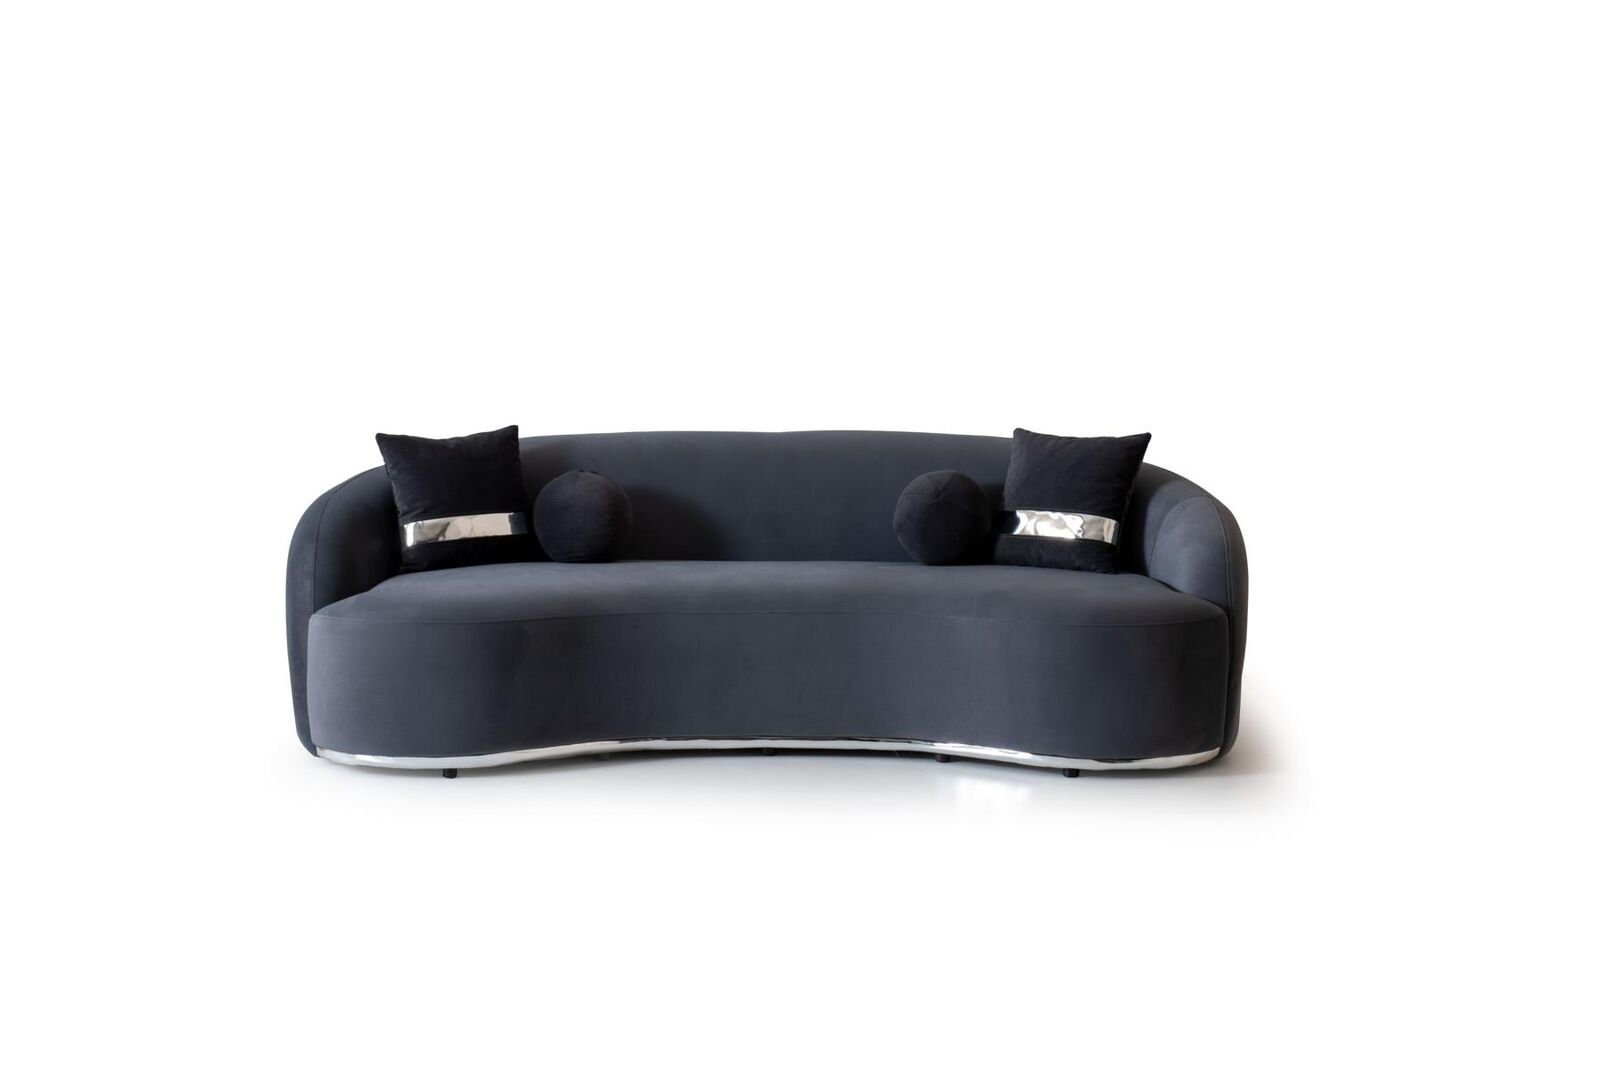 JVmoebel 4-Sitzer Designer Sofa 4 - Sitzer Schwarze Sofas Couchen Big xxl Sitzmöbel, 1 Teile, Made in Europa